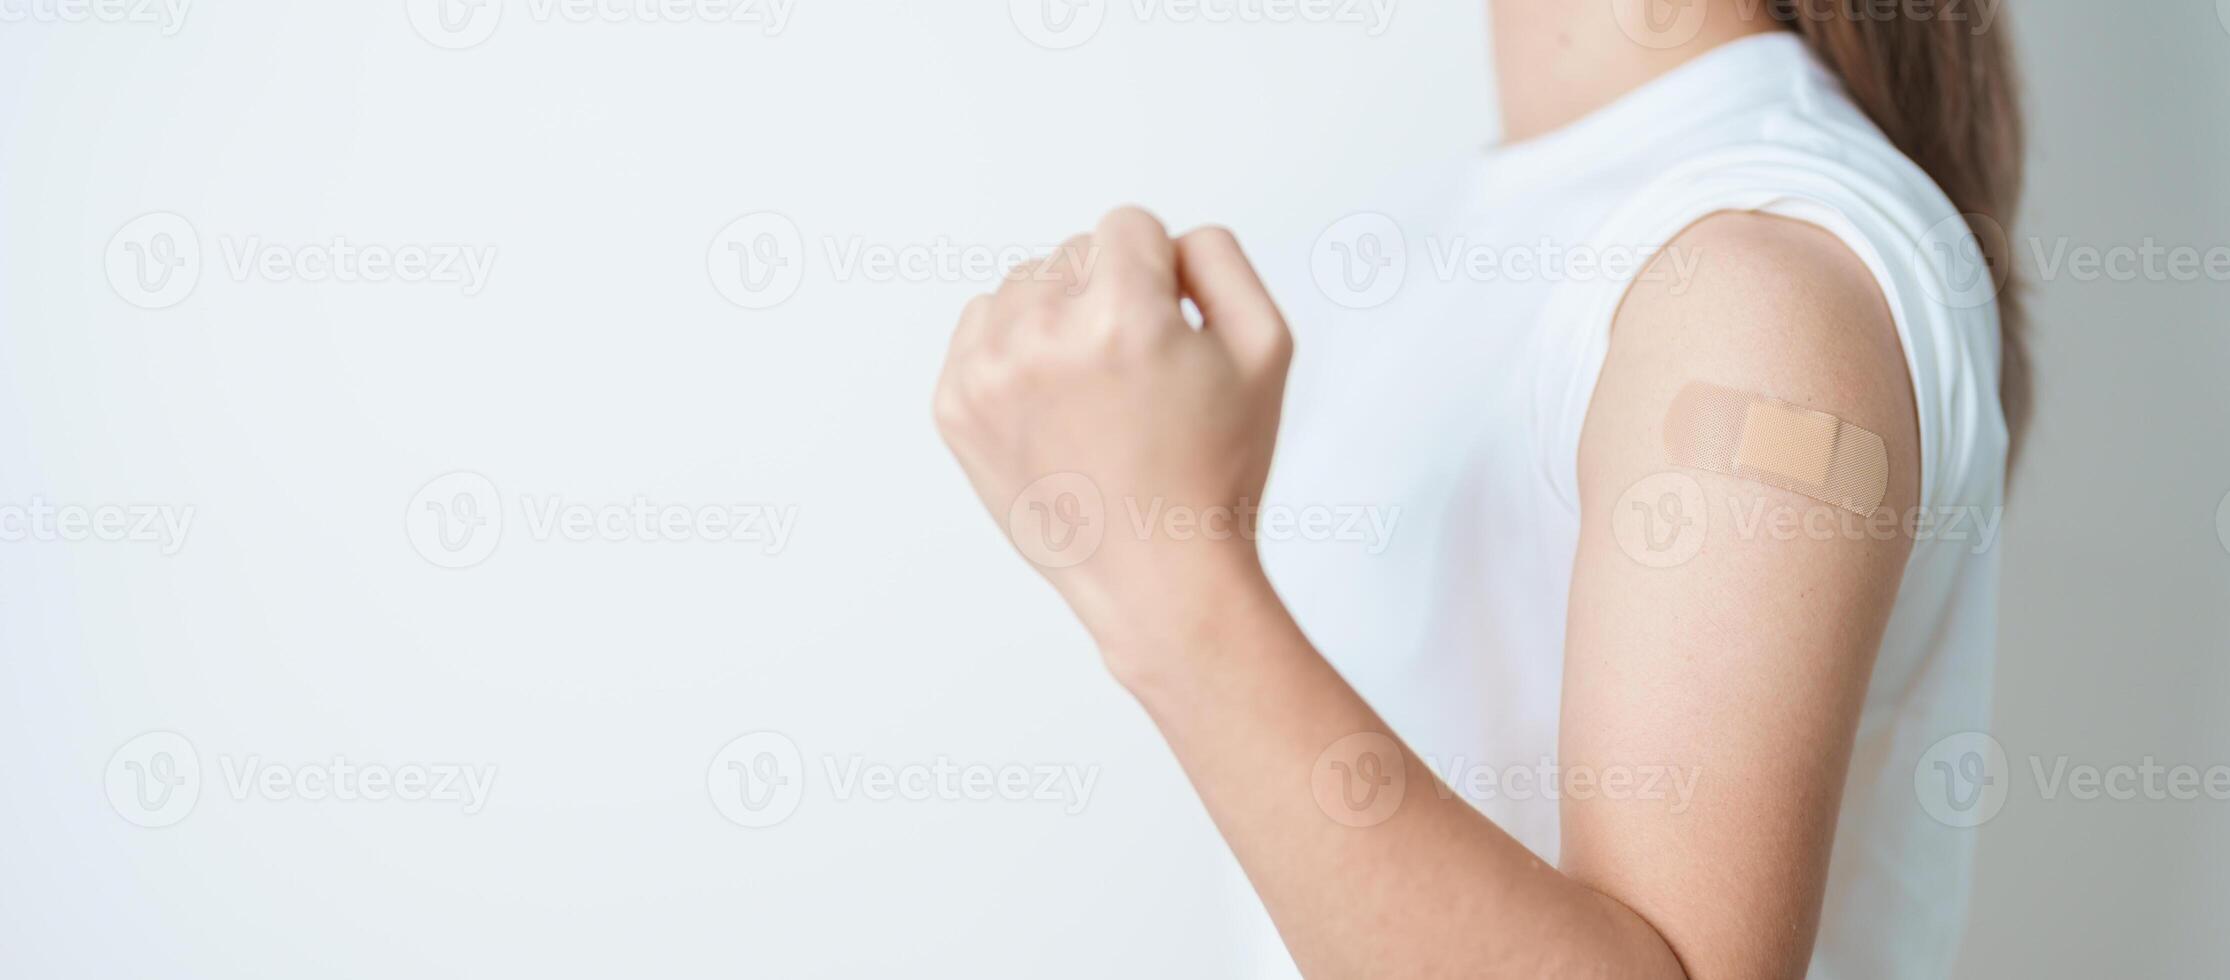 kvinna med bandage efter tar emot vaccin. vaccination och immunisering för influensa, hpv, zoster, ipd, dtp eller difteri, tetanus och kikhosta, mmr, hepatit b, covid och vattkoppor vaccin foto